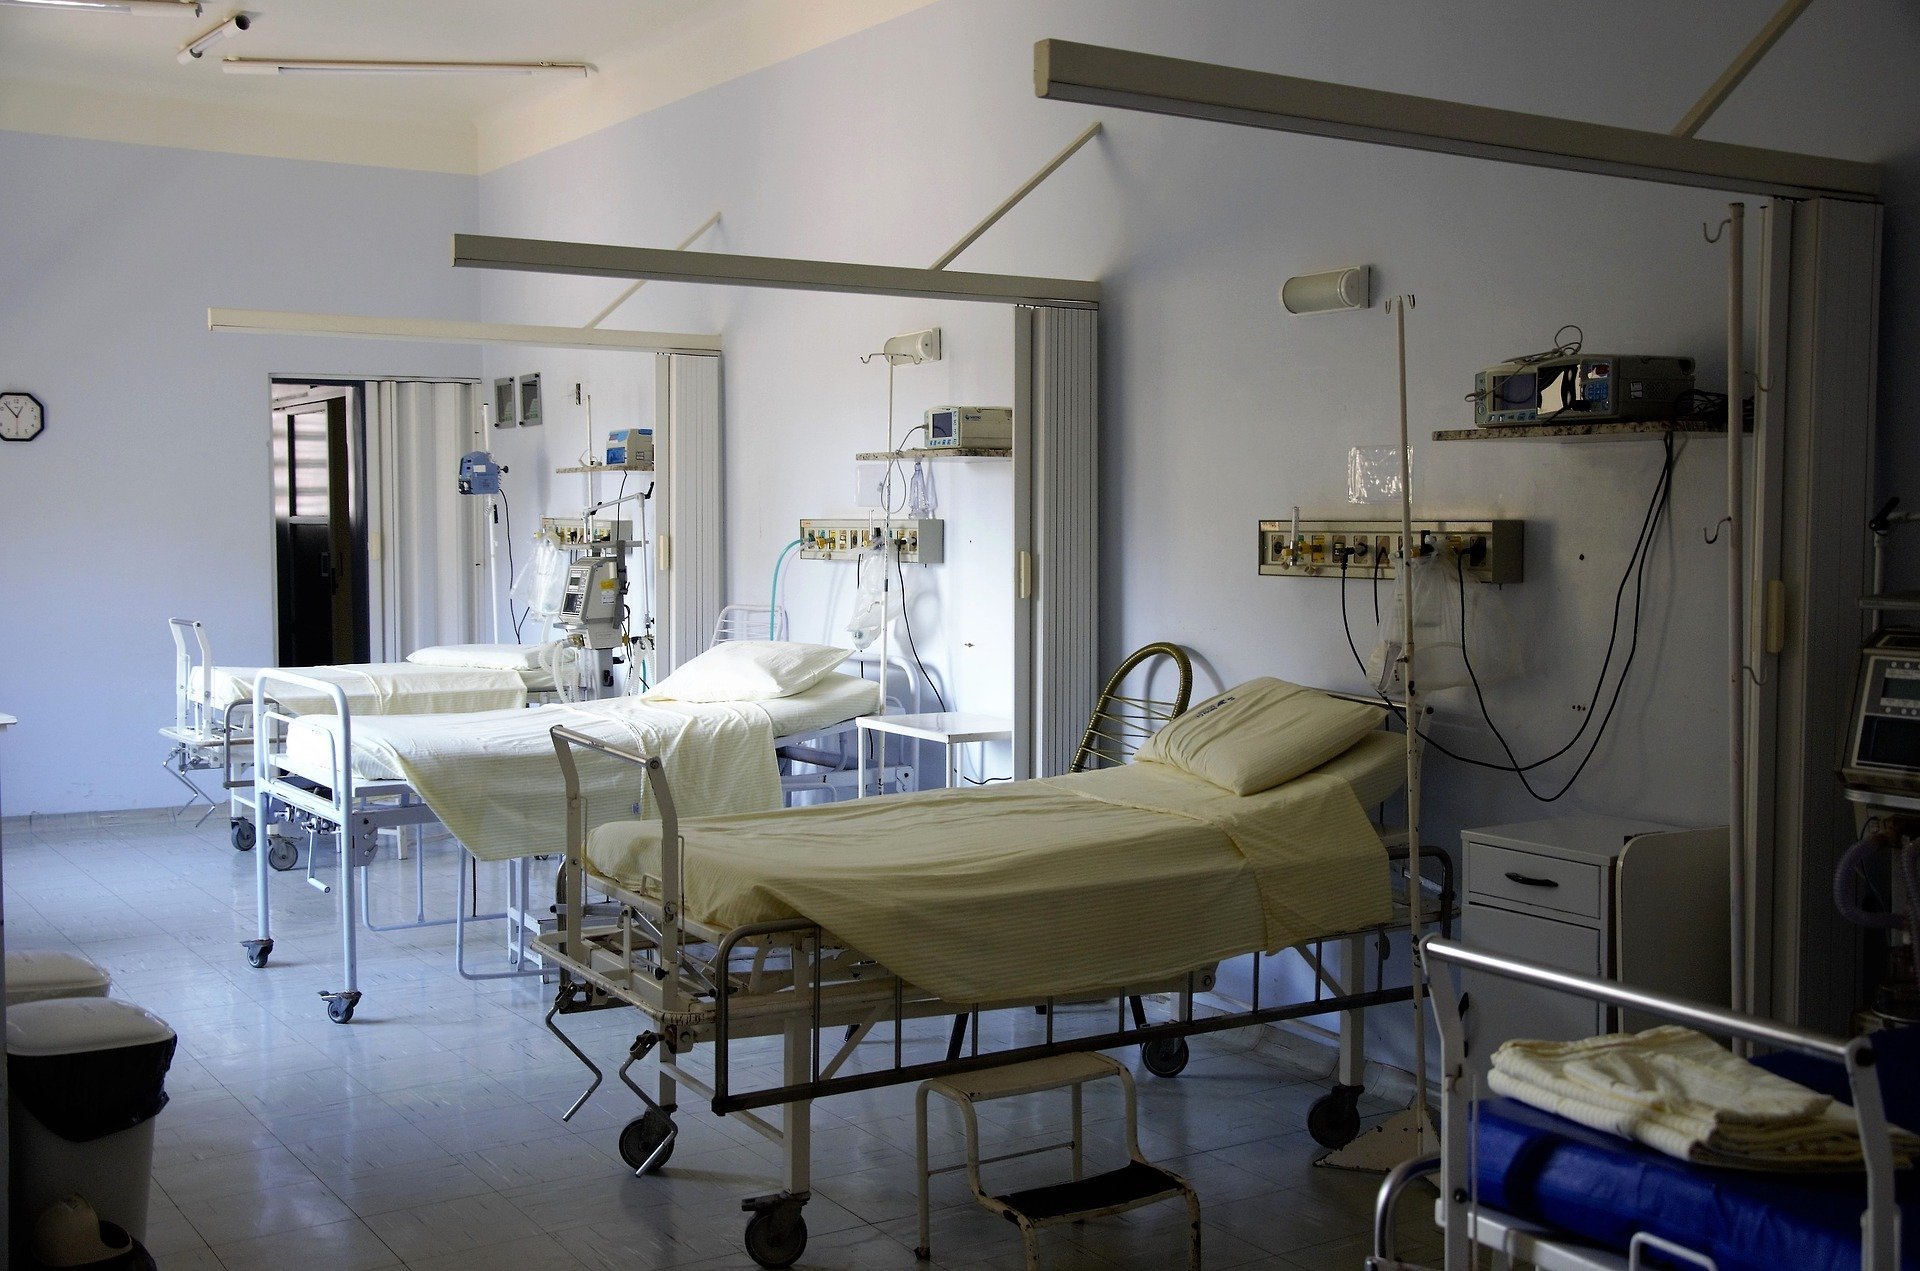 

Две больницы Ижевска выплатят компенсации родственникам погибшего пациента

